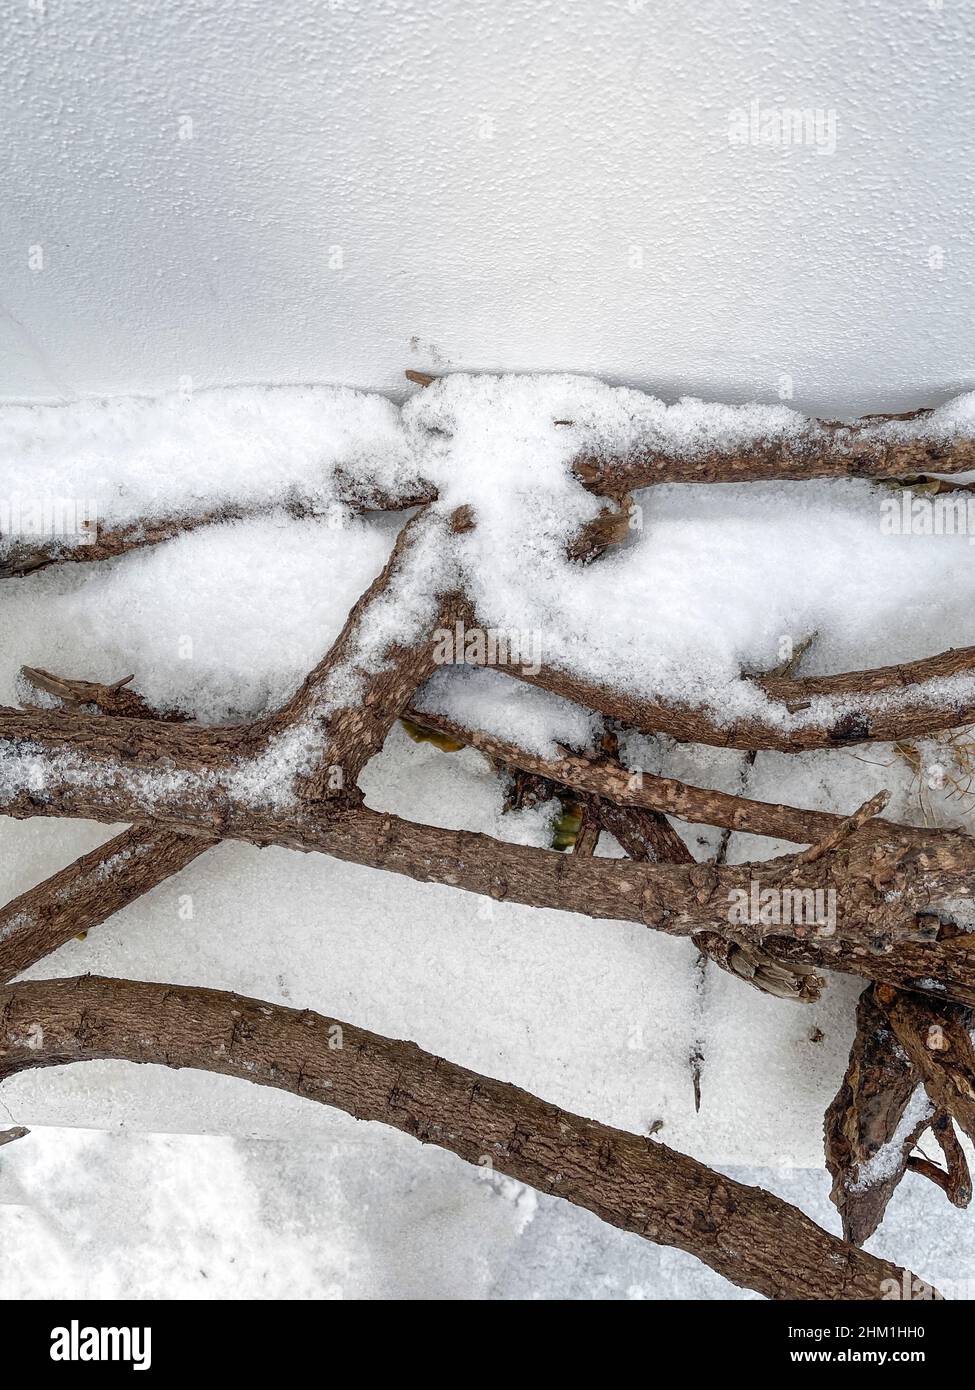 Rami al suolo coperti con il primo inverno snowflakes.Copy spazio. Immagine stock. Foto Stock